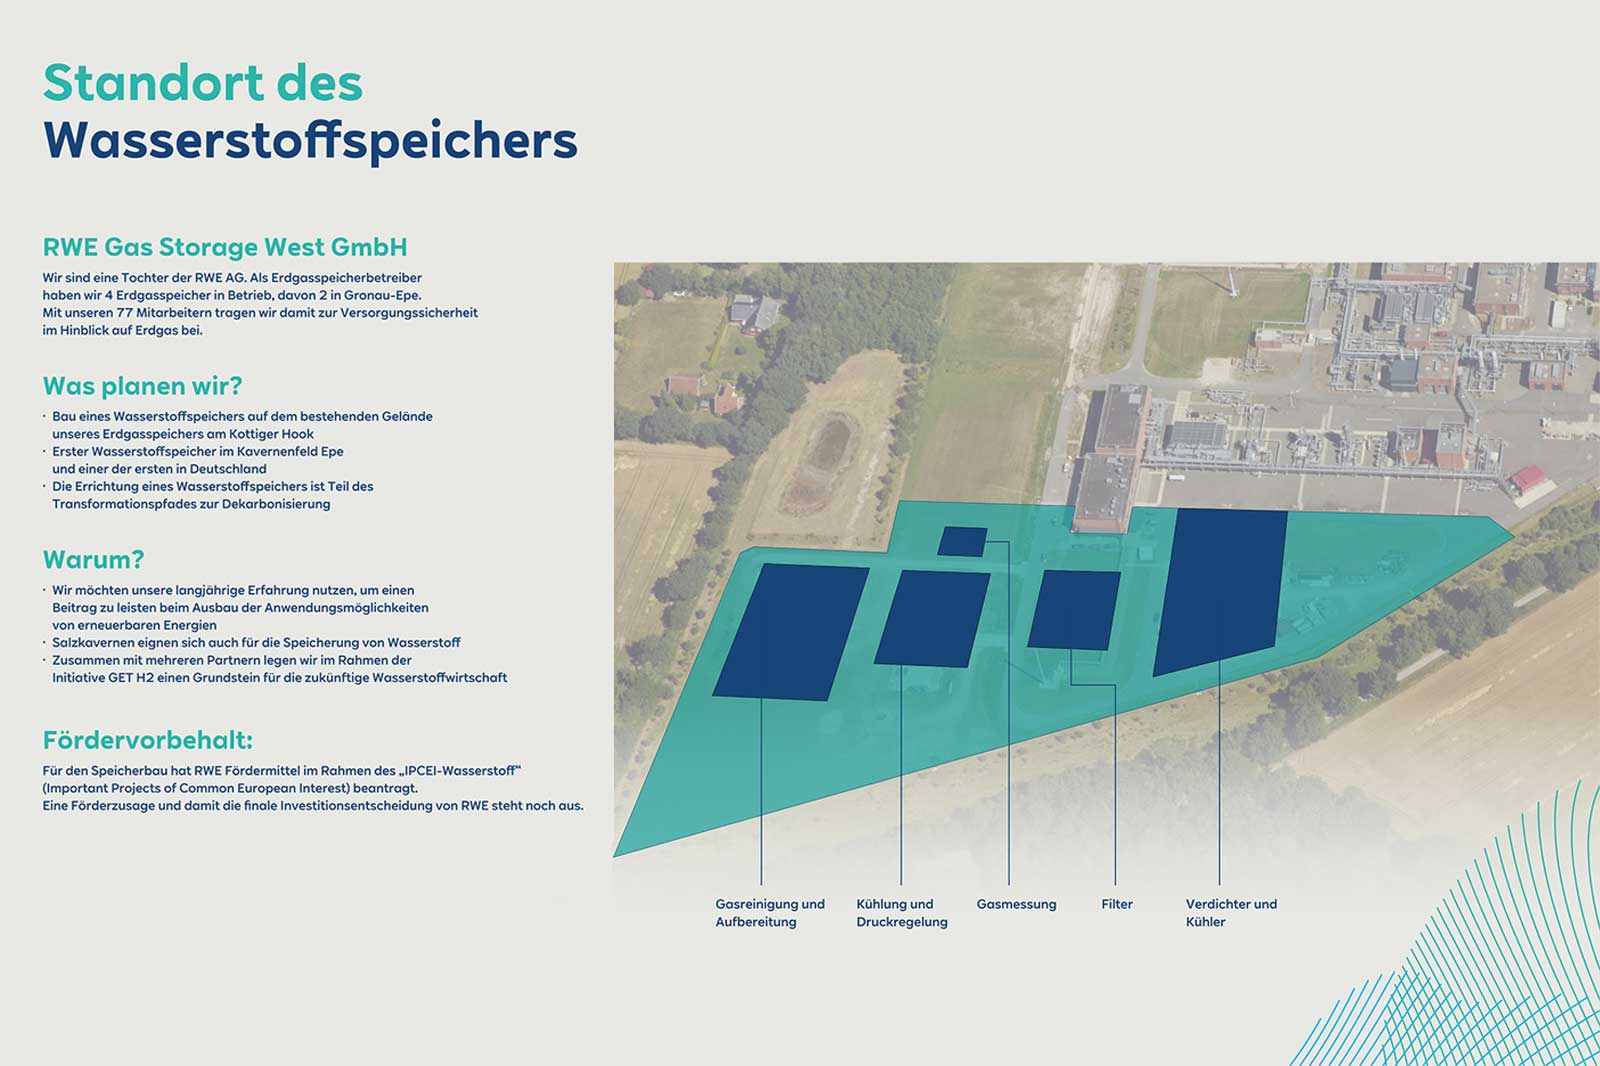 Infographic: location oft he hydrogen storage – Dialog event 9 June 2022 | Hydrogen RWE Gas Storage West GmbH